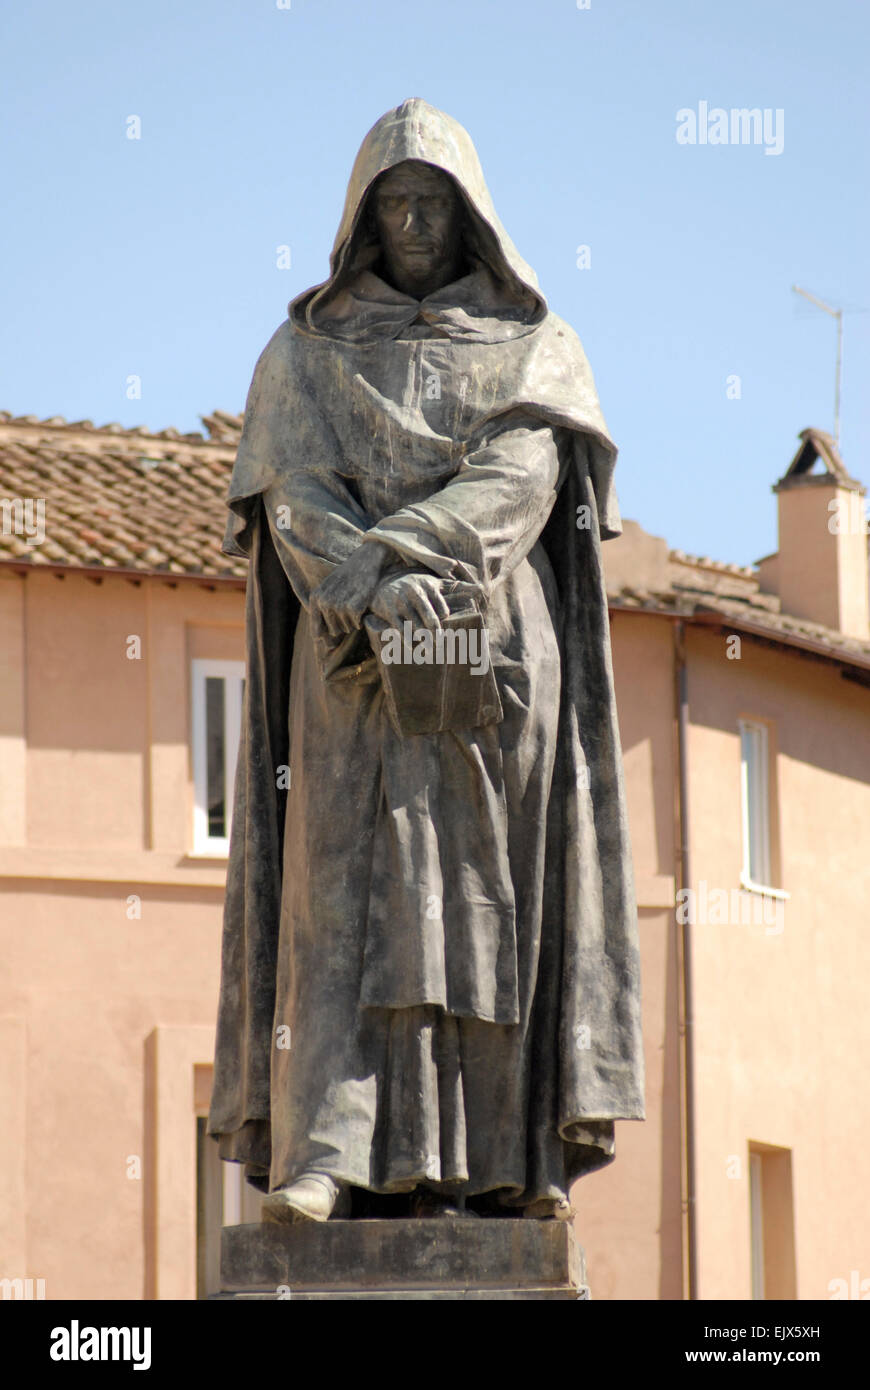 Campo de' Fiore, Rom.  Statue von Giordano Bruno, aufgeklärten Renaissance Mönch in 1600 auf dem Scheiterhaufen verbrannt wurde. Stockfoto